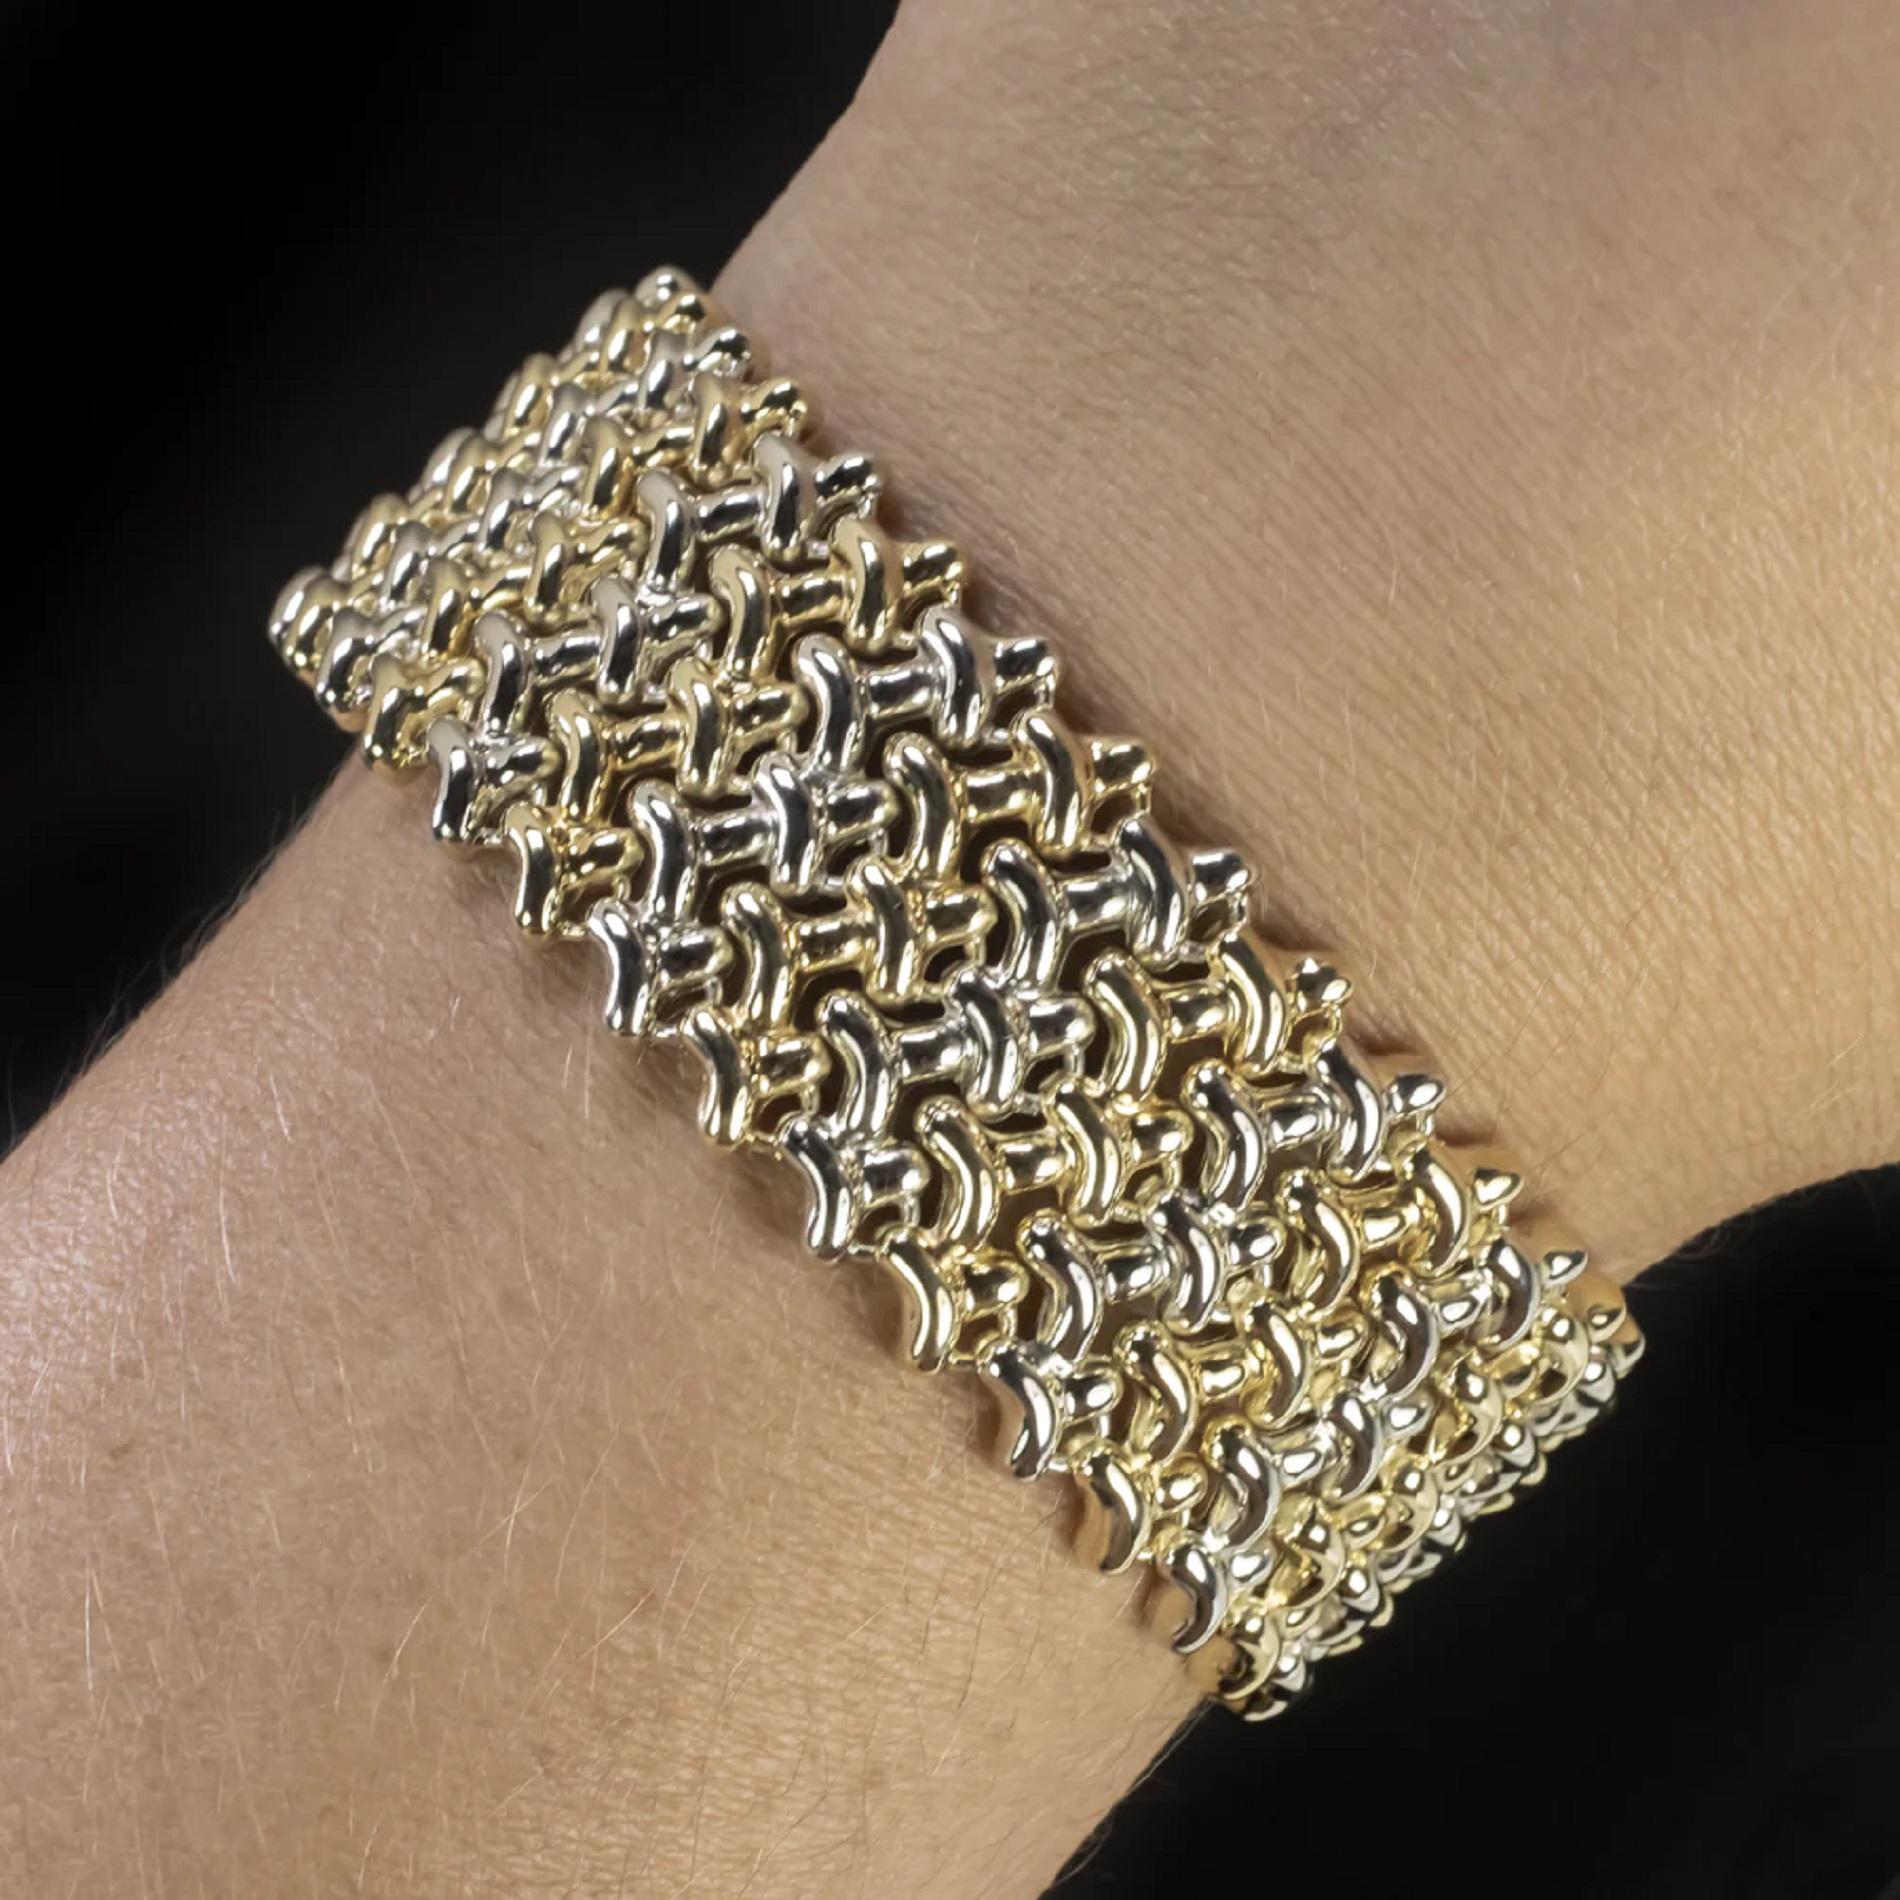 Ce bracelet 18 carats offre un look polyvalent avec des maillons bicolores d'un côté et entièrement en or jaune de l'autre. Cette pièce de créateur est fabriquée par Chimento. 

- Or jaune et blanc massif 18k

- Chunky two tone links

- Très